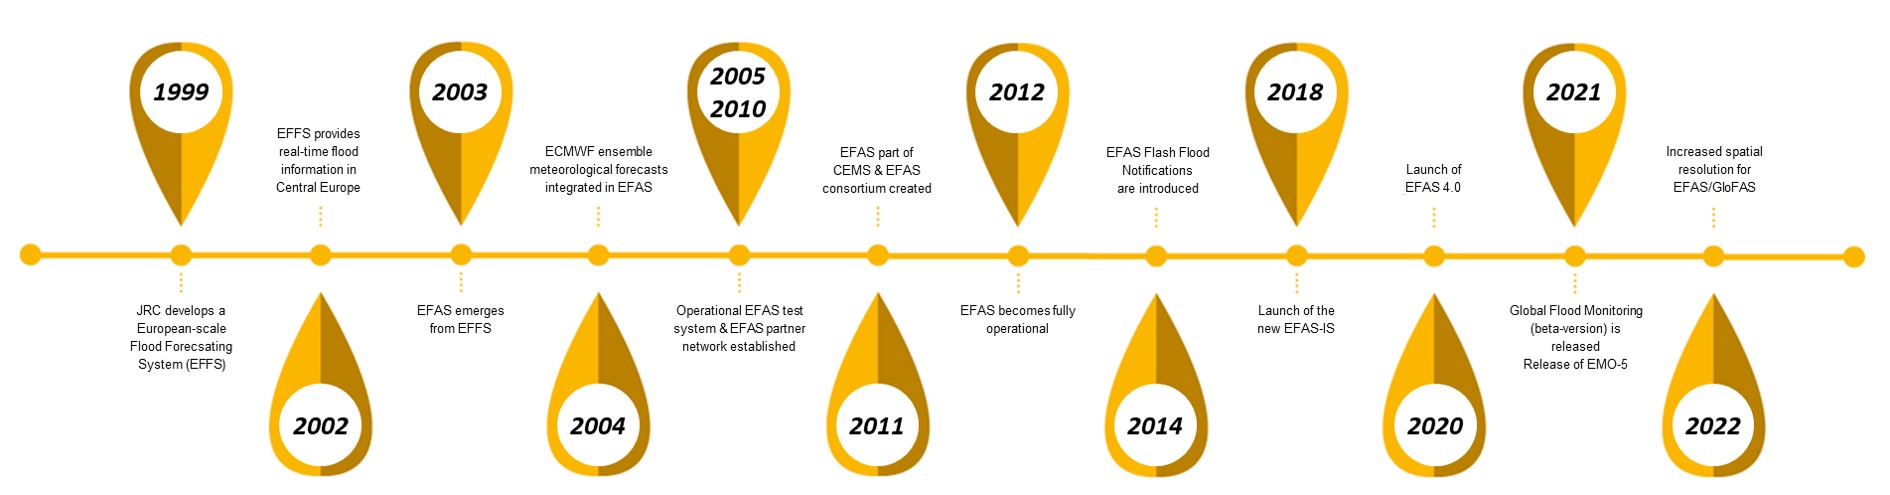 EFAS timeline 1999-2022